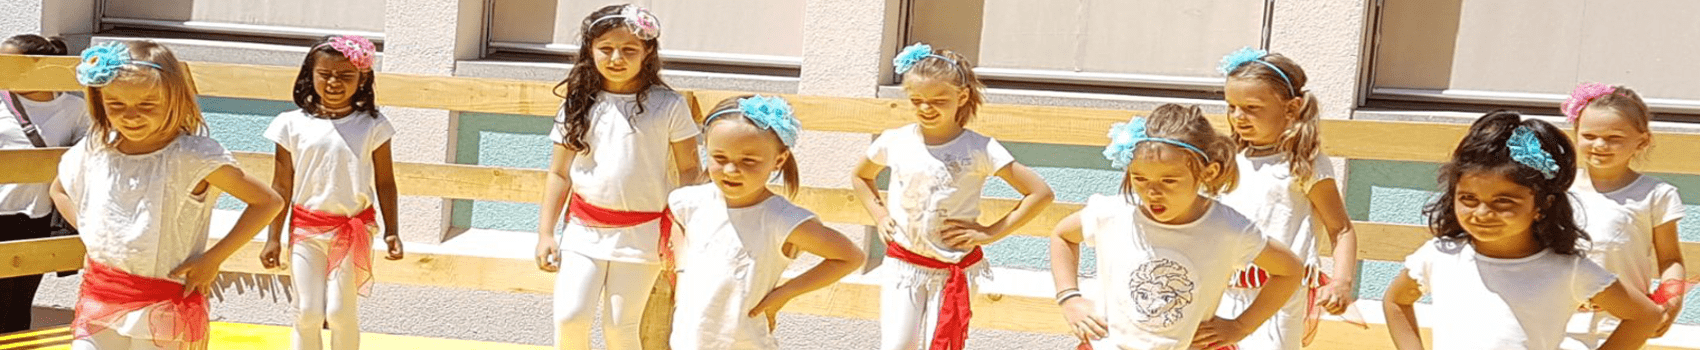 Tanzplauschgruppe Kinder